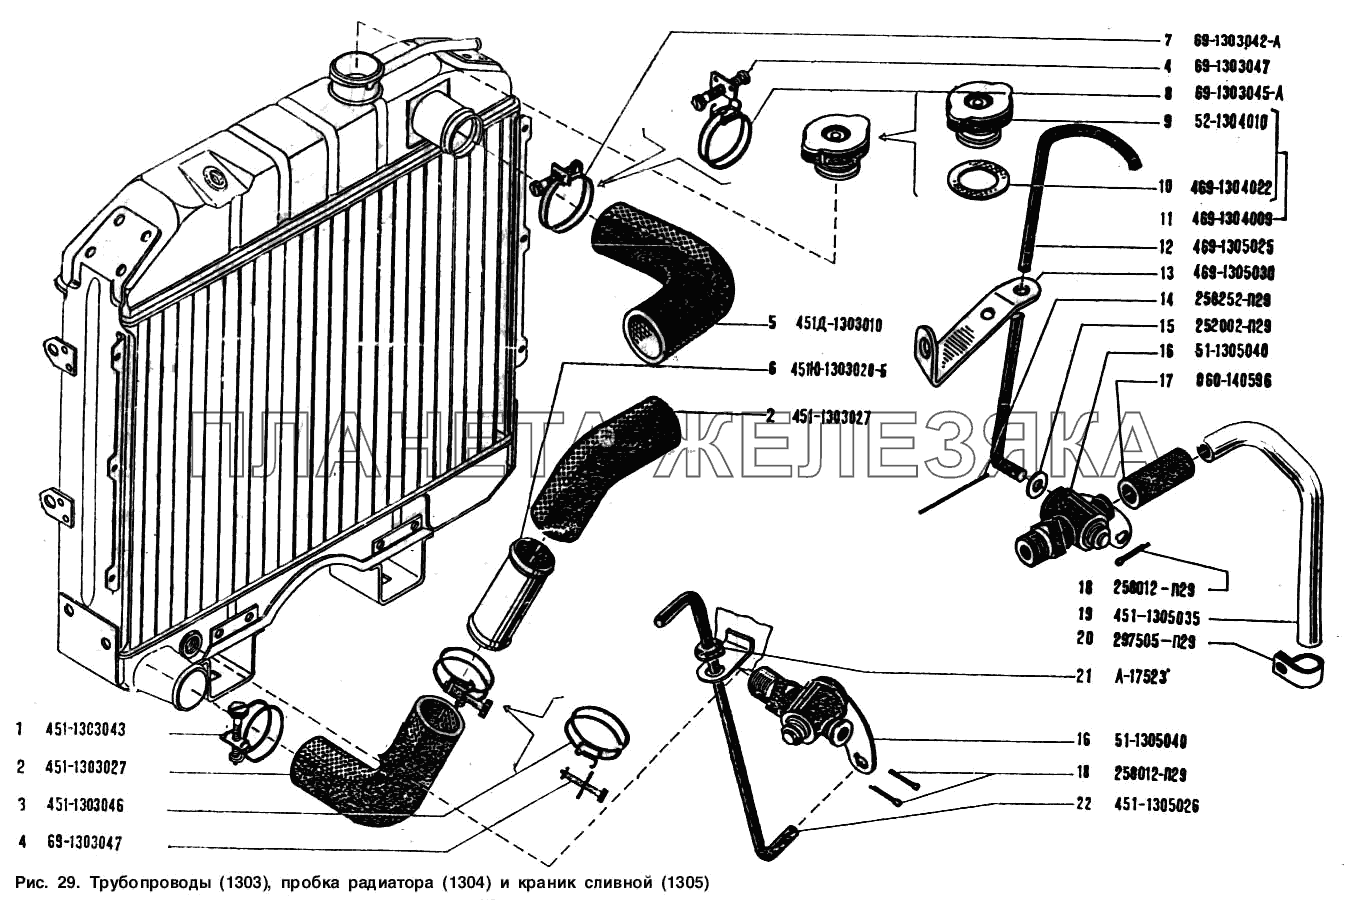 Трубопроводы, пробка радиатора и краник сливной УАЗ-3151